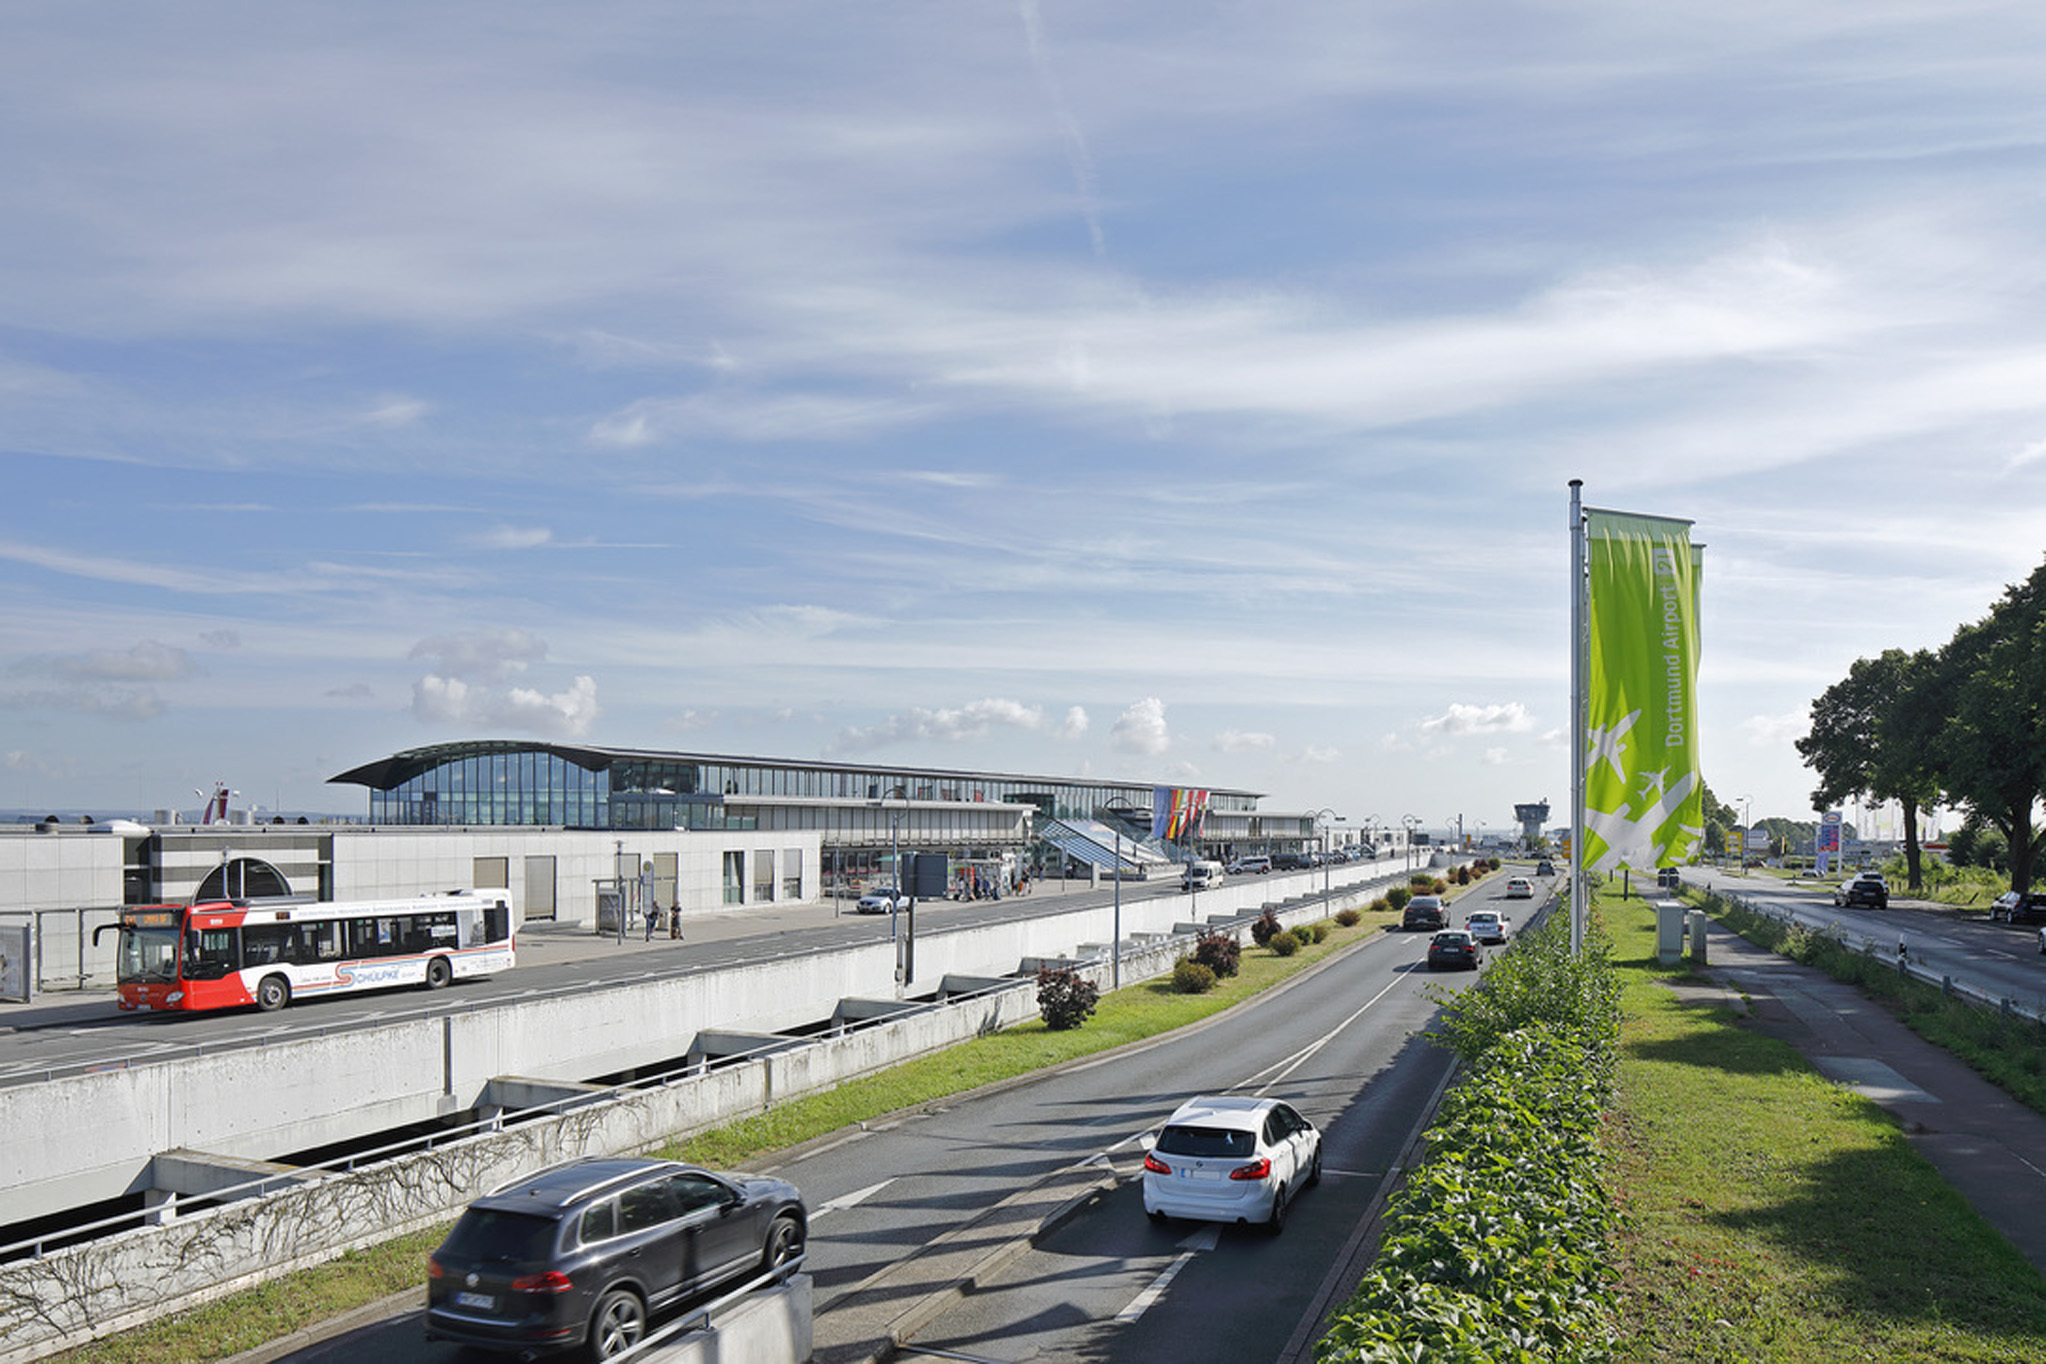 Flughafen Dortmund / Dortmund Airport 21 - ©Hans Juergen Landes